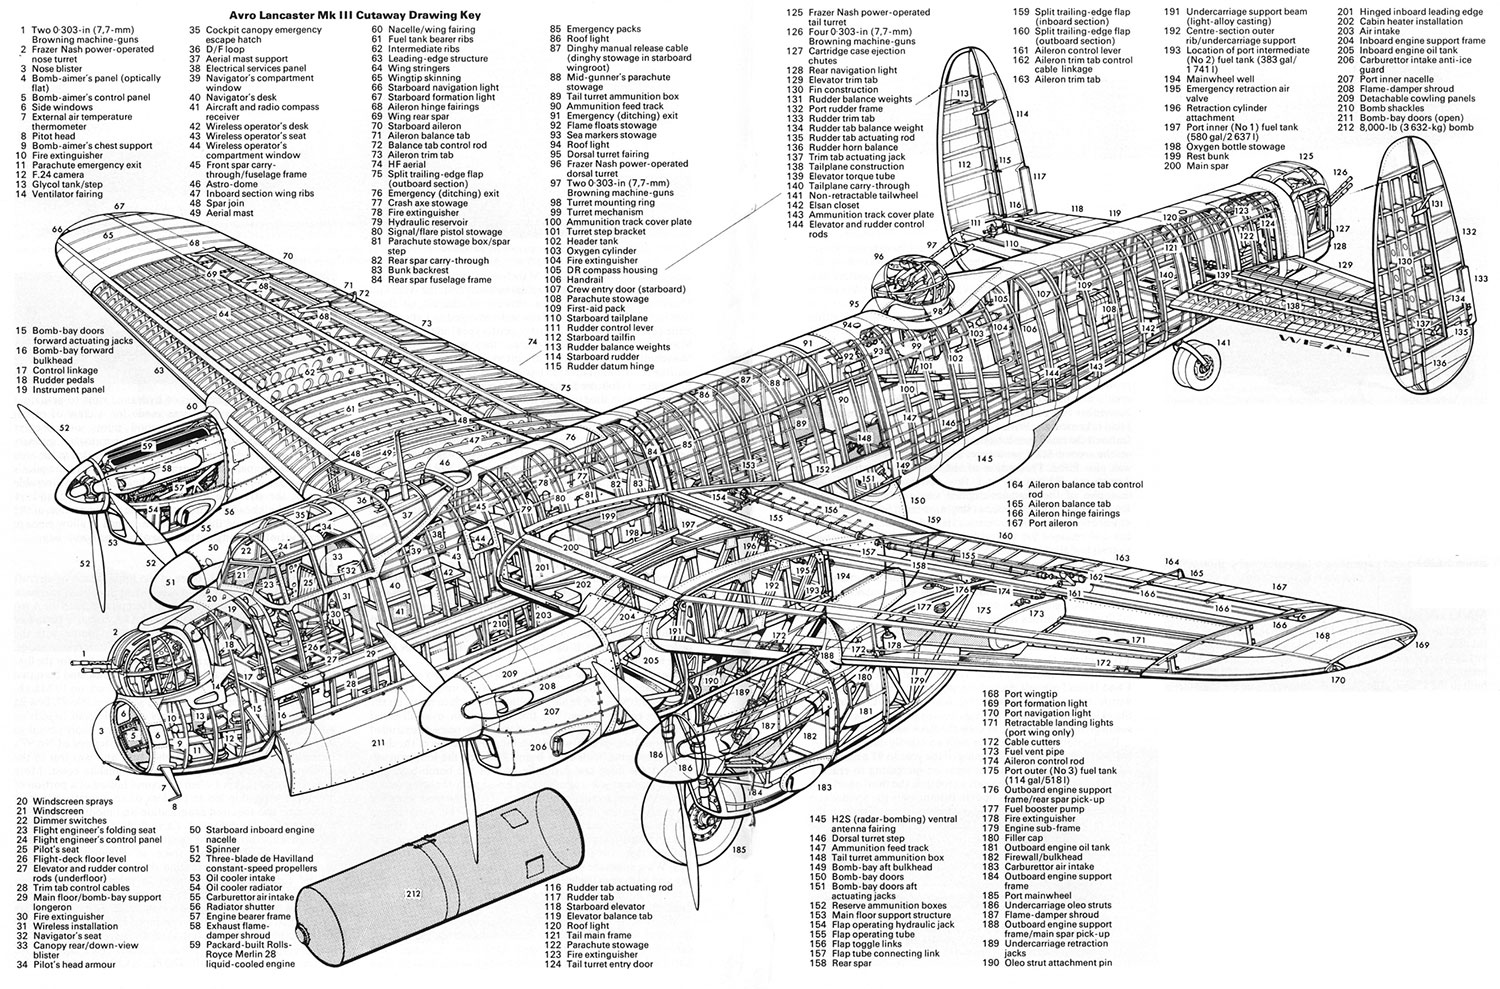 Характеристики модификации Lancaster Mk.III